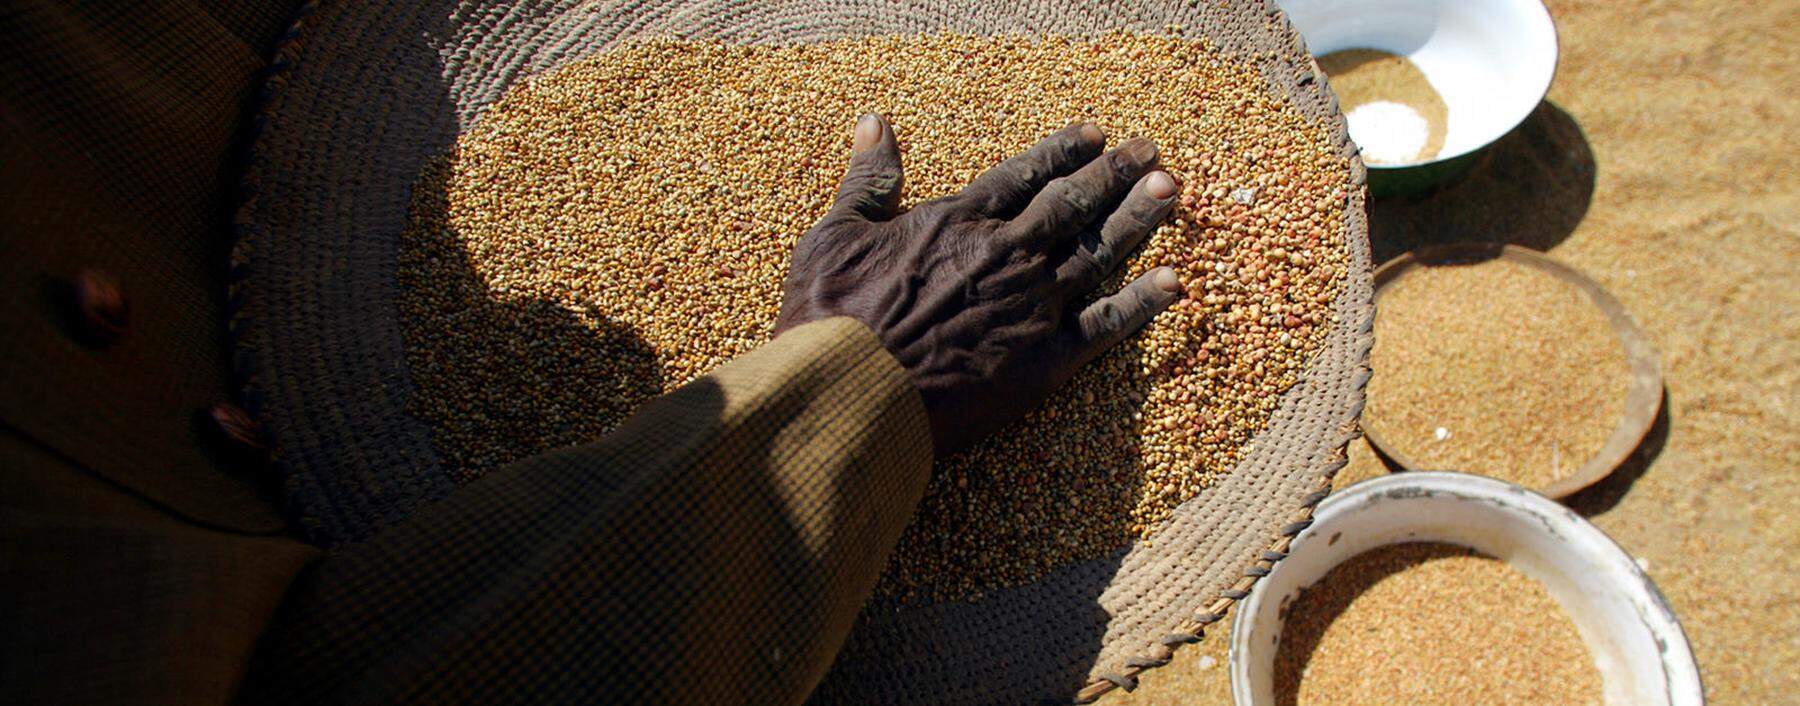 Eine Sudanesin filtert importierte Getreidekörner für die weitere Verarbeitung.